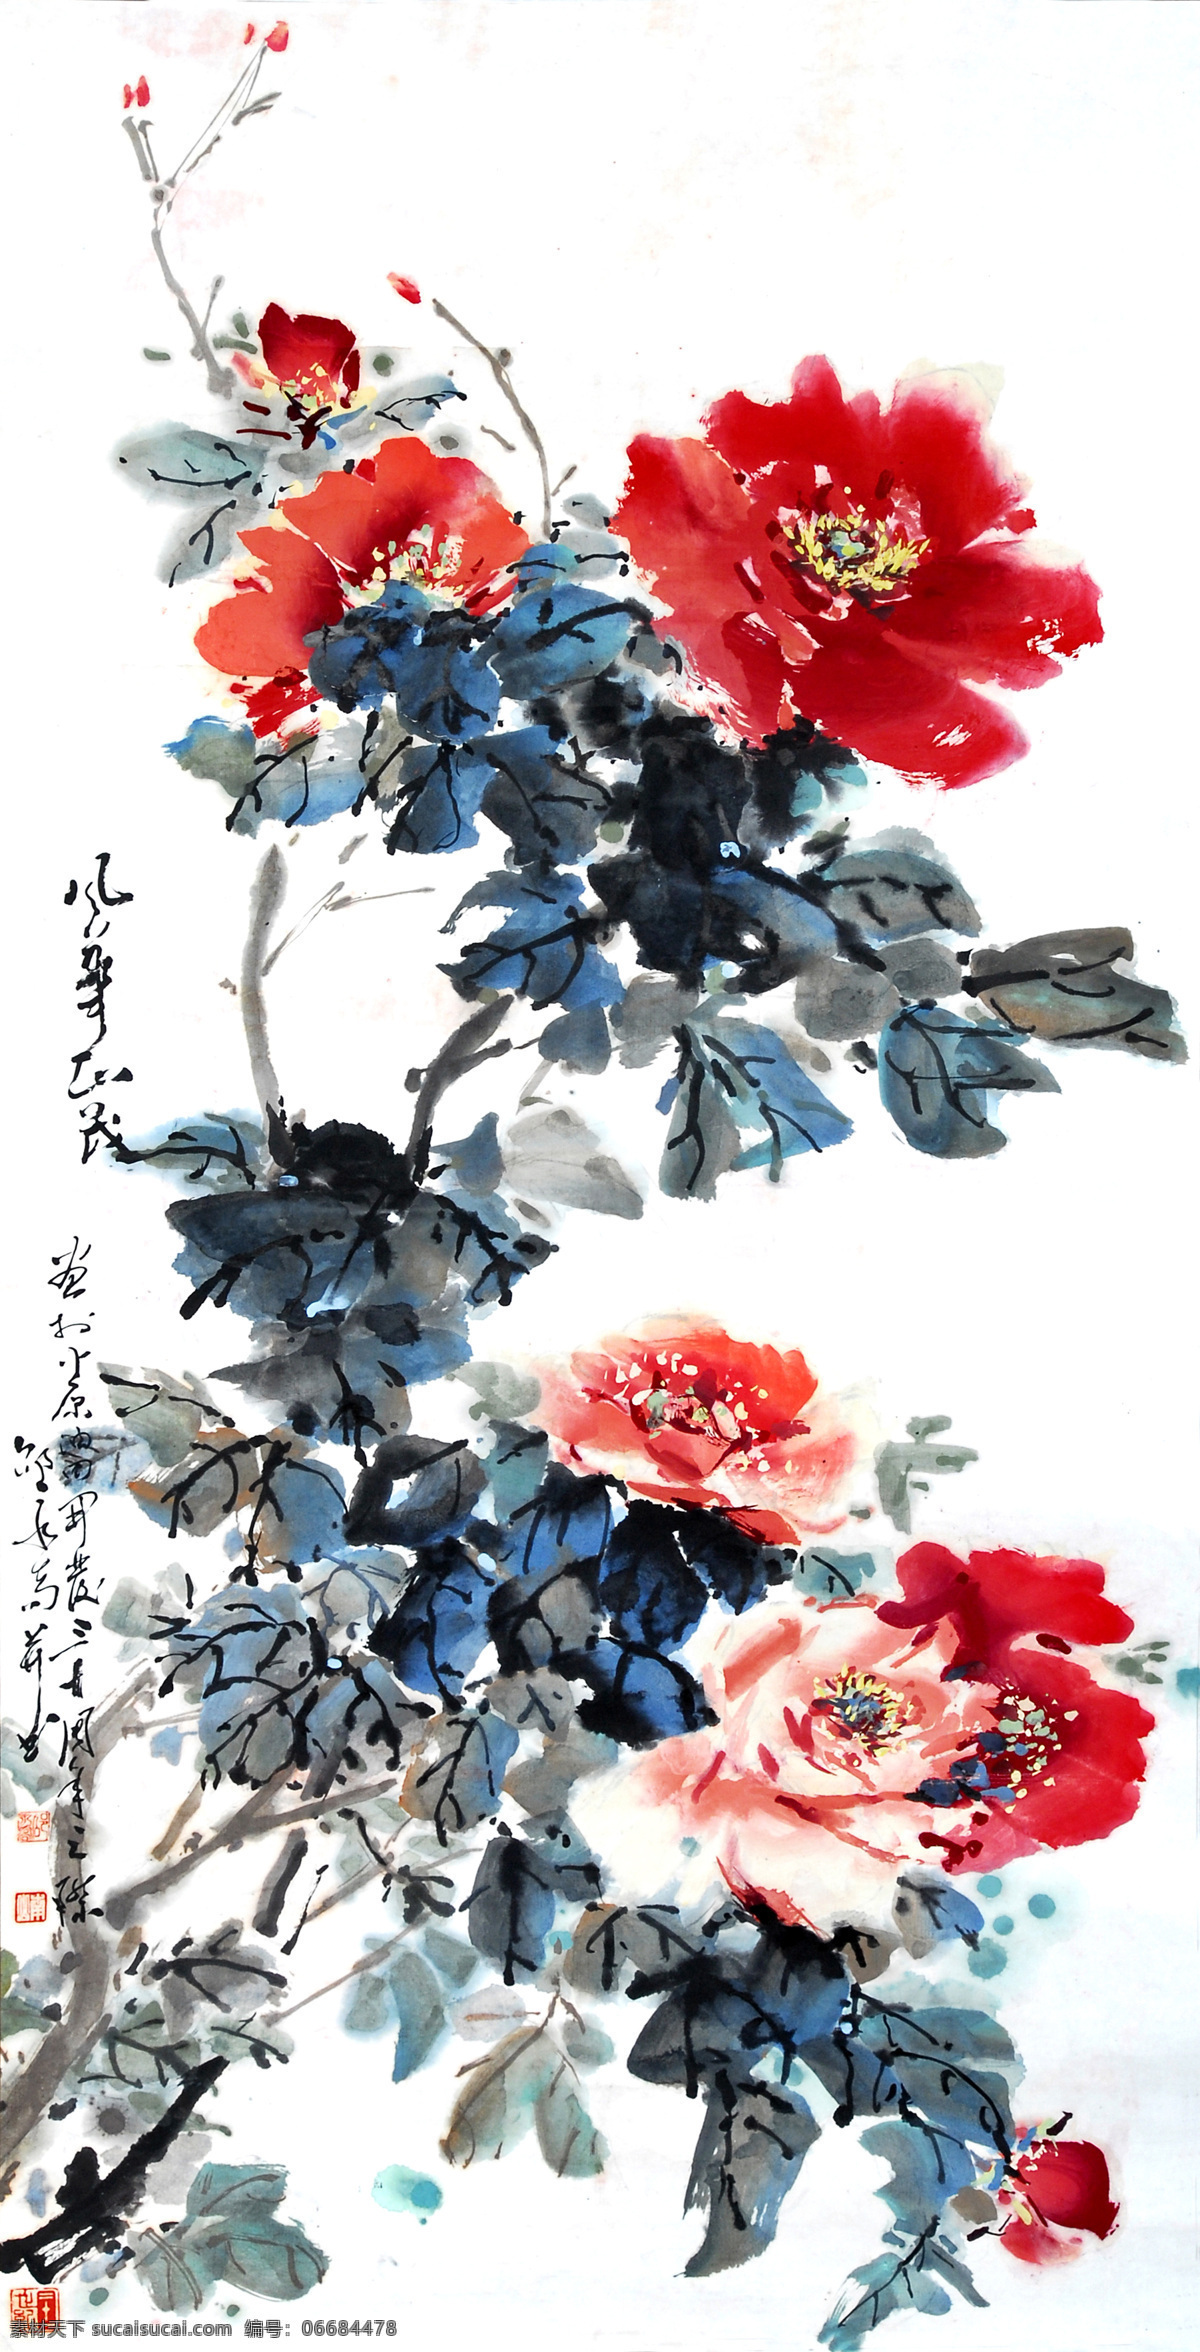 红牡丹 美术 中国画 水墨画 牡丹画 牡丹花 国画艺术 国画集88 绘画书法 文化艺术